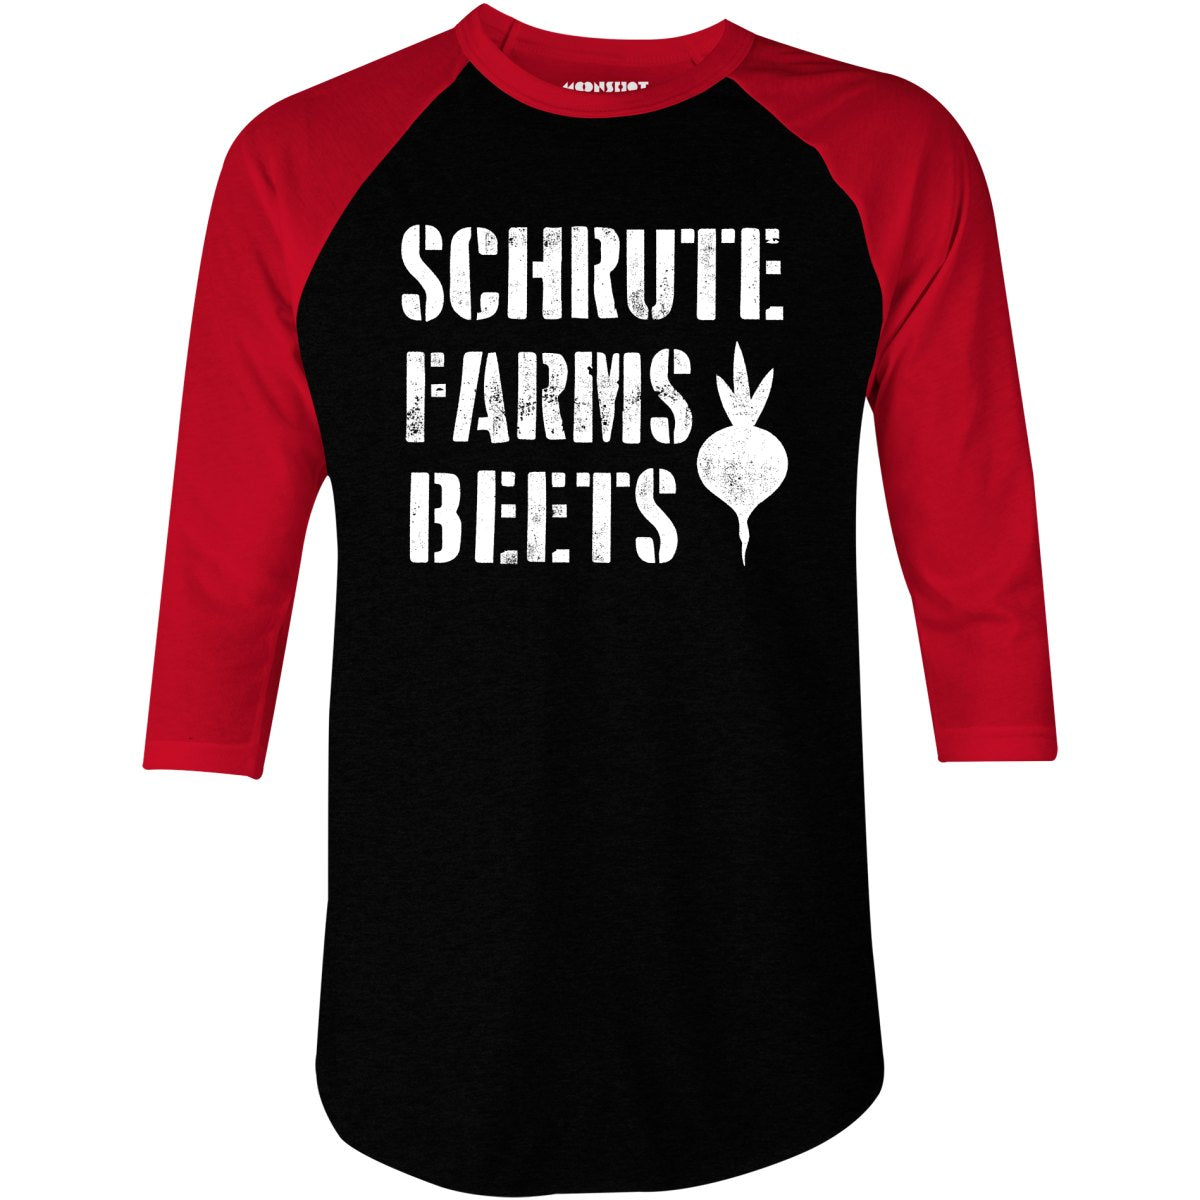 Schrute Farms Beets - 3/4 Sleeve Raglan T-Shirt